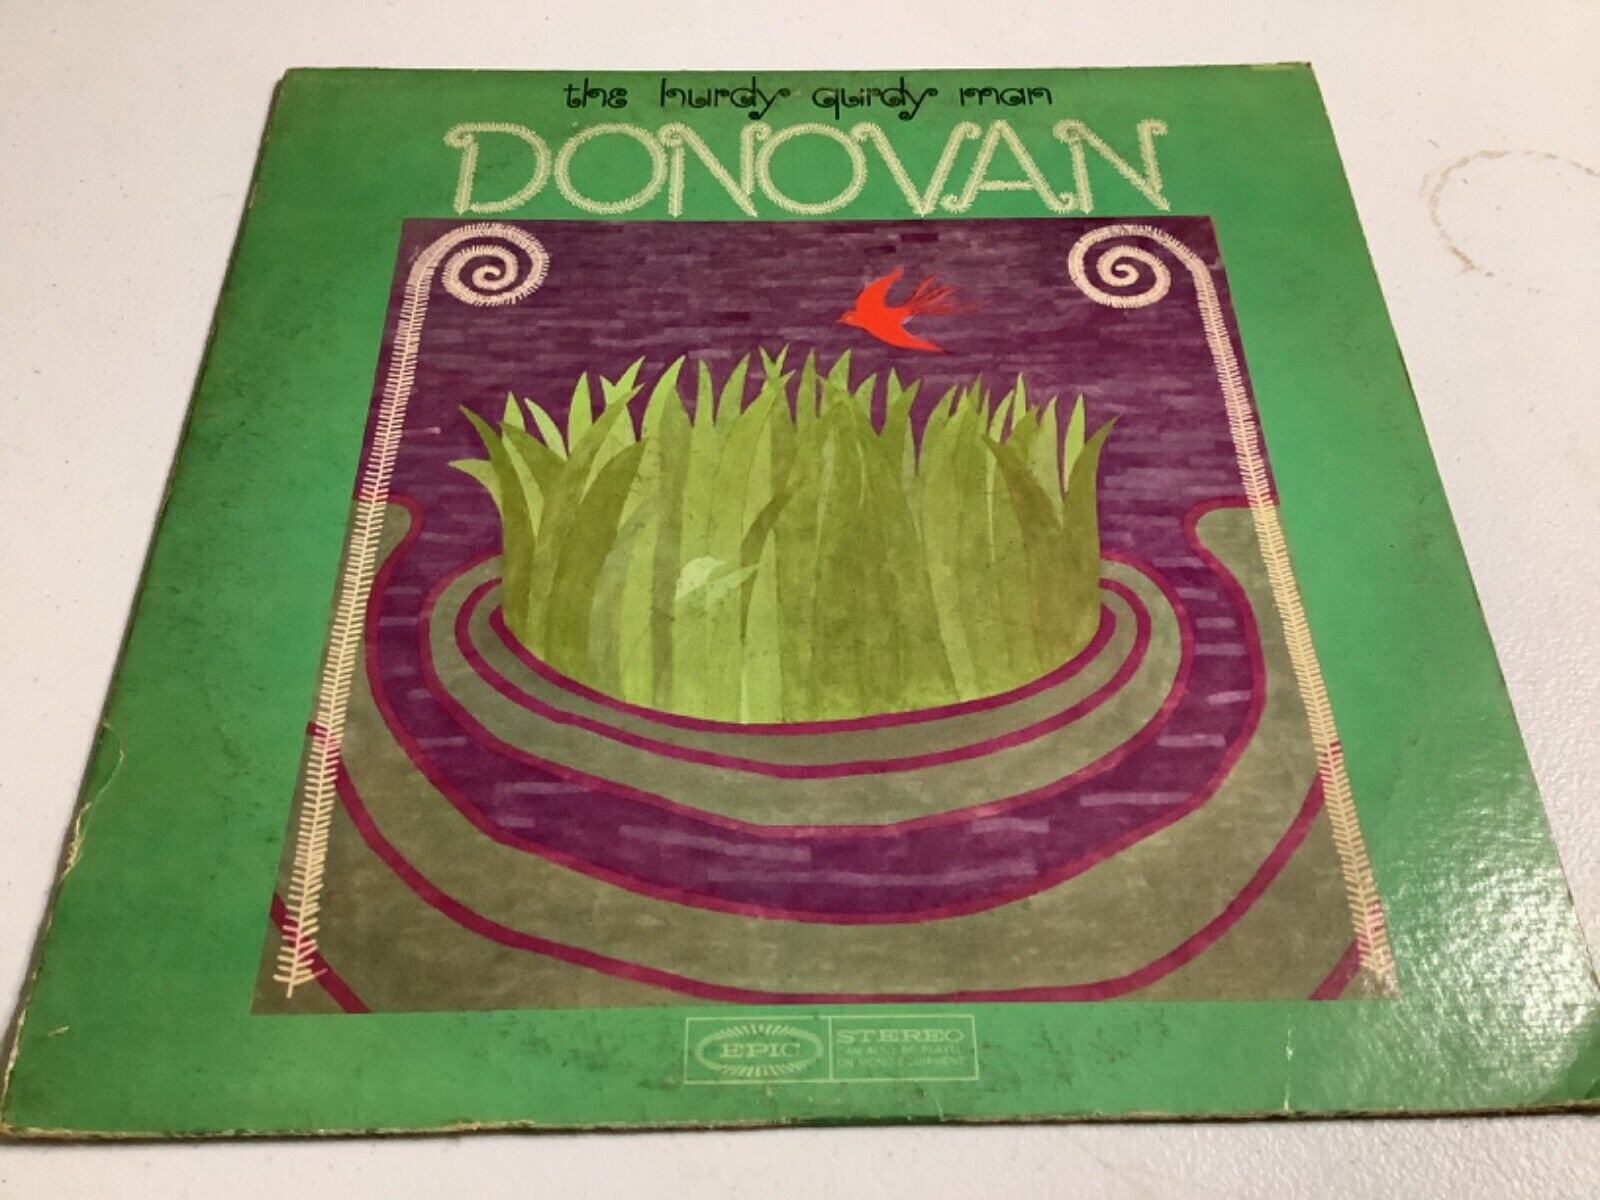 DONOVAN - “THE HURDY GURDY MAN” LP - 1968 EPIC BN 26420 VG+/VG+